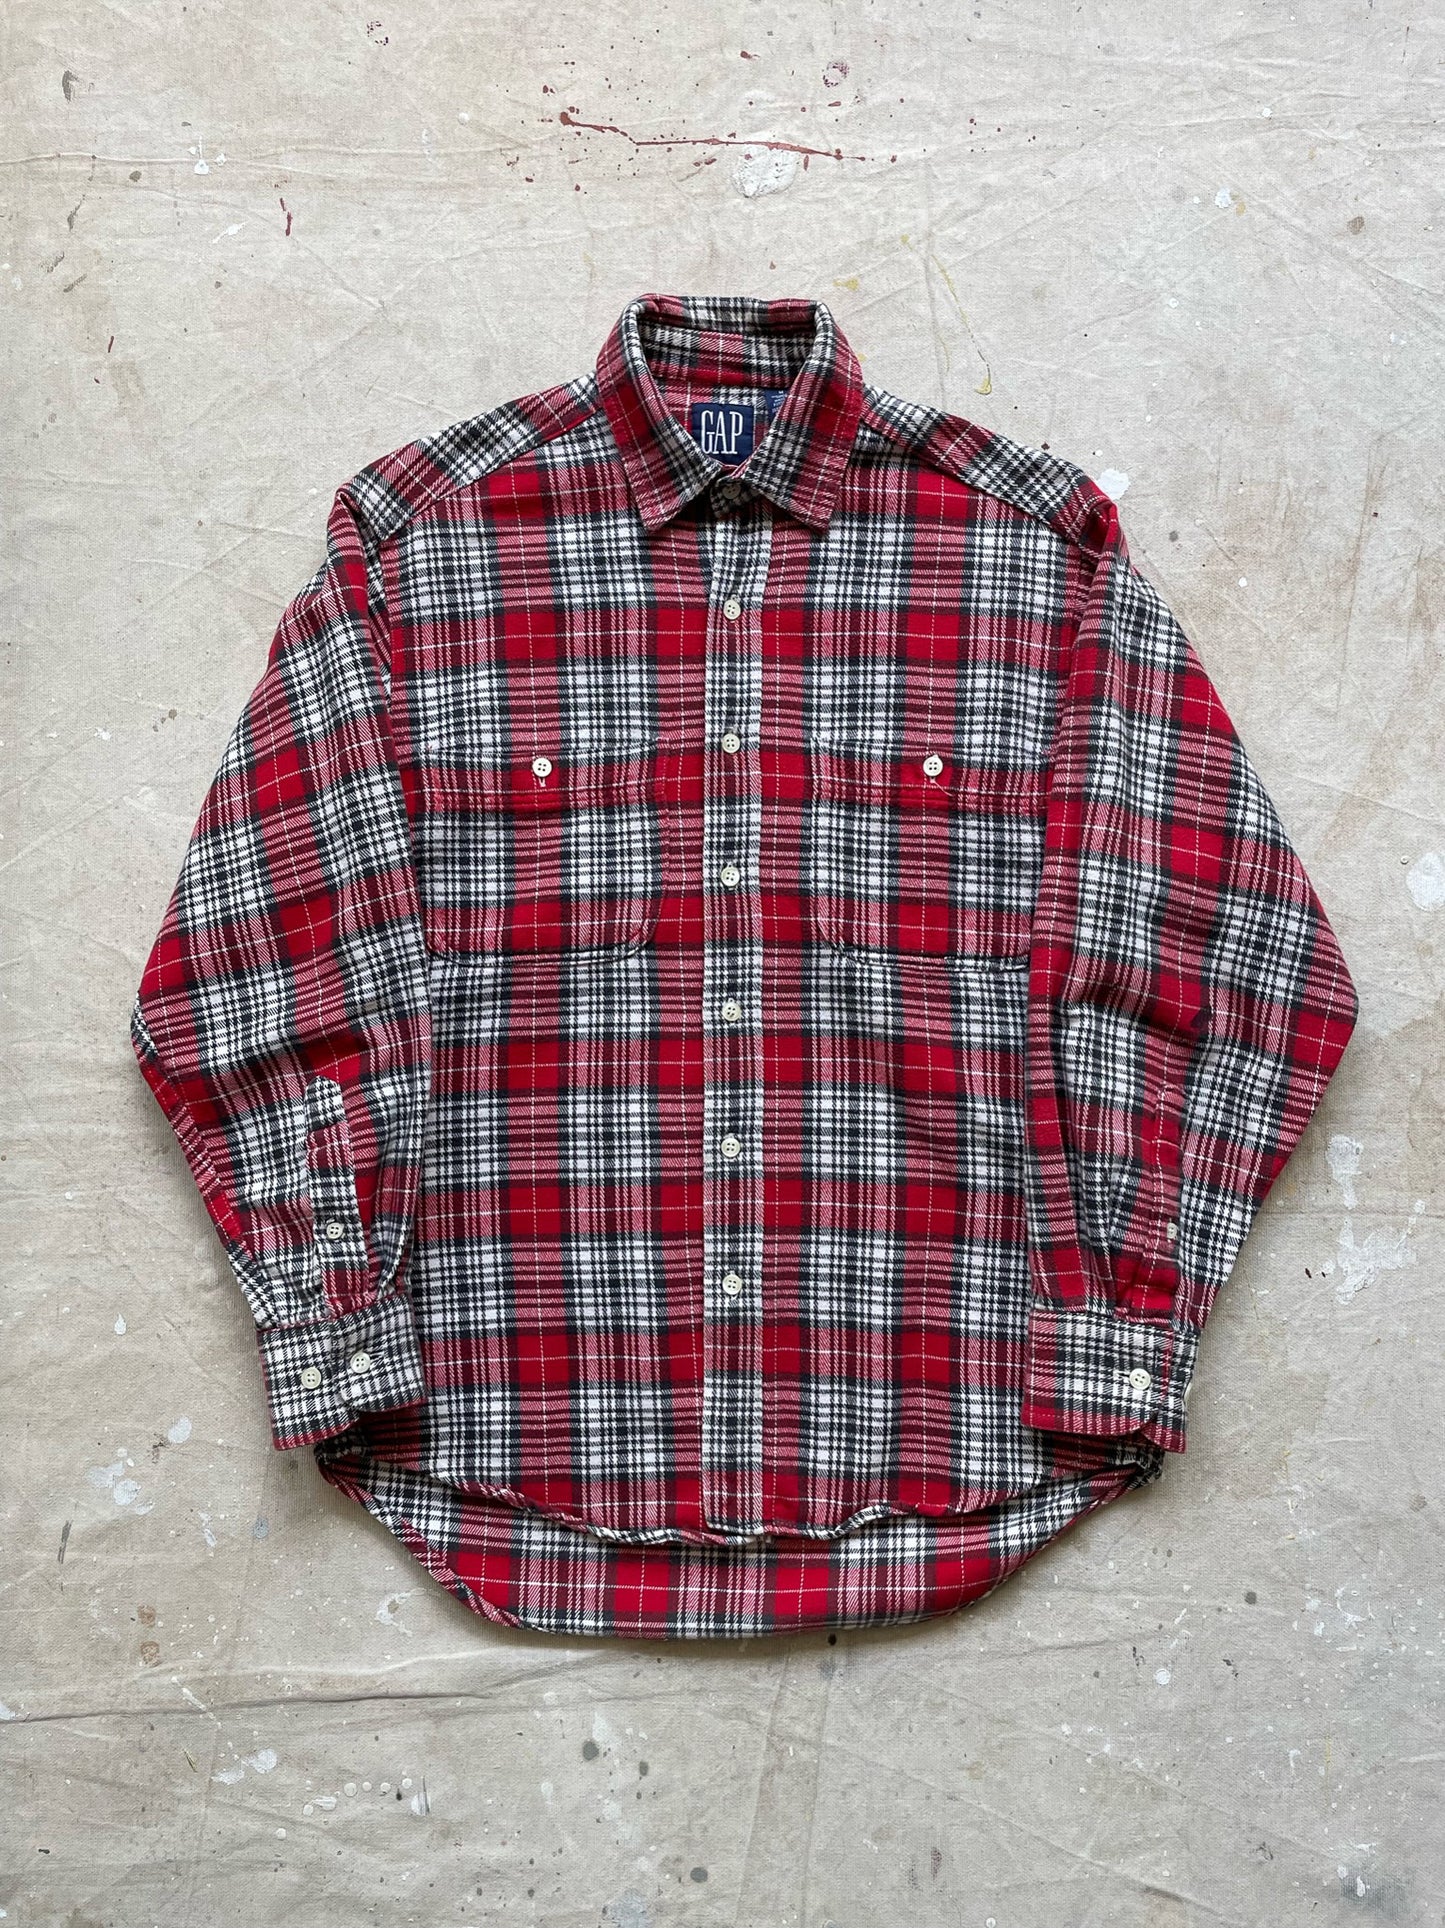 90's GAP Long Sleeve Plaid Shirt—[M]